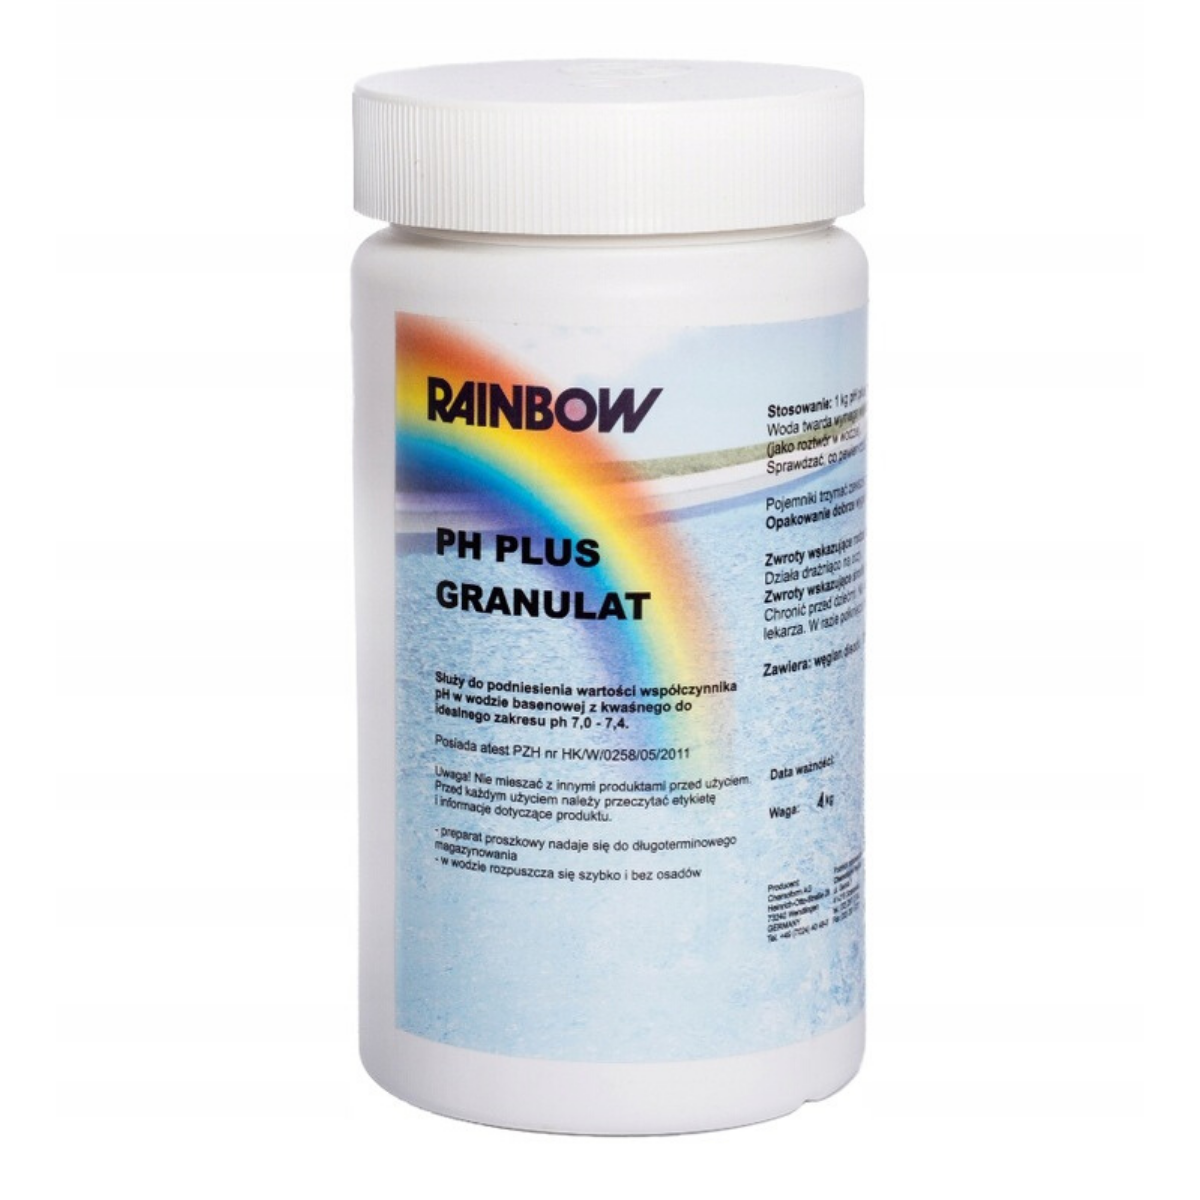 RAINBOW pH Plus granulat 1 KG - basensklep